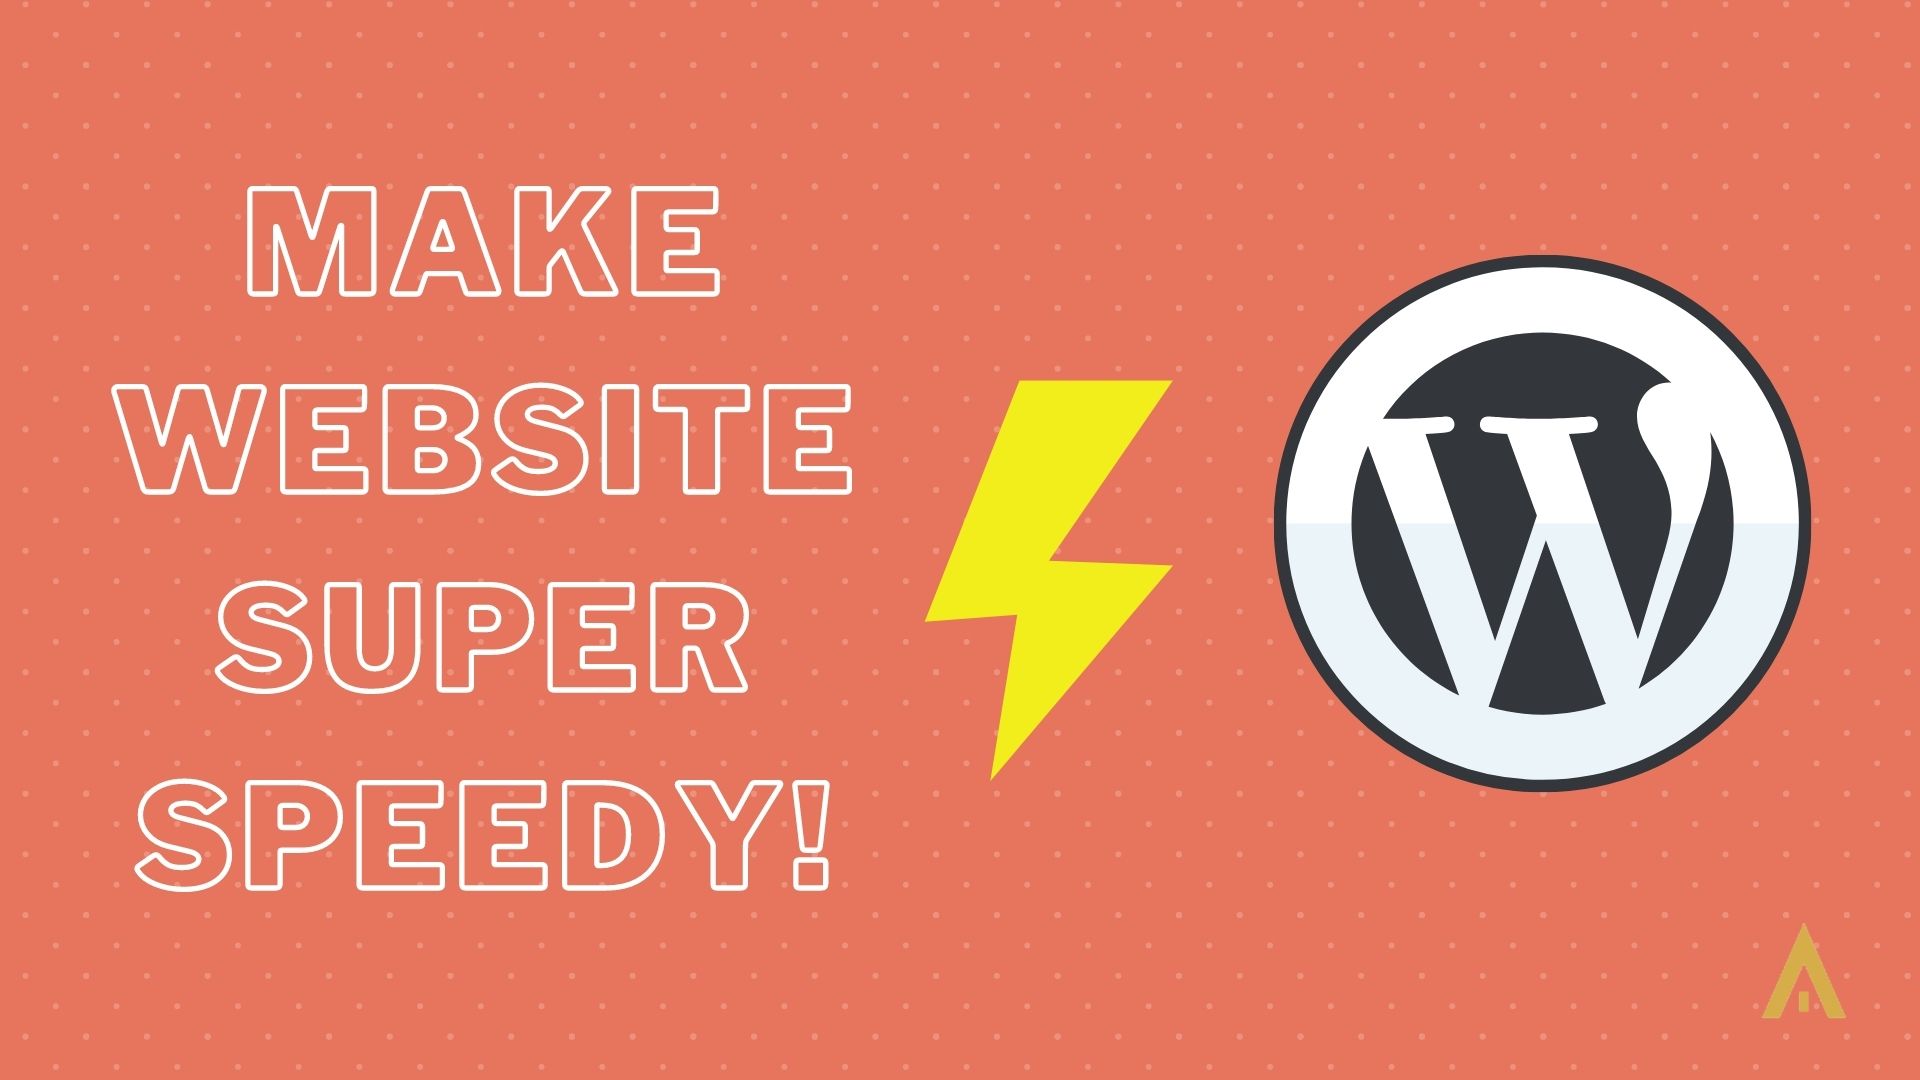 How to Make Website Speedy